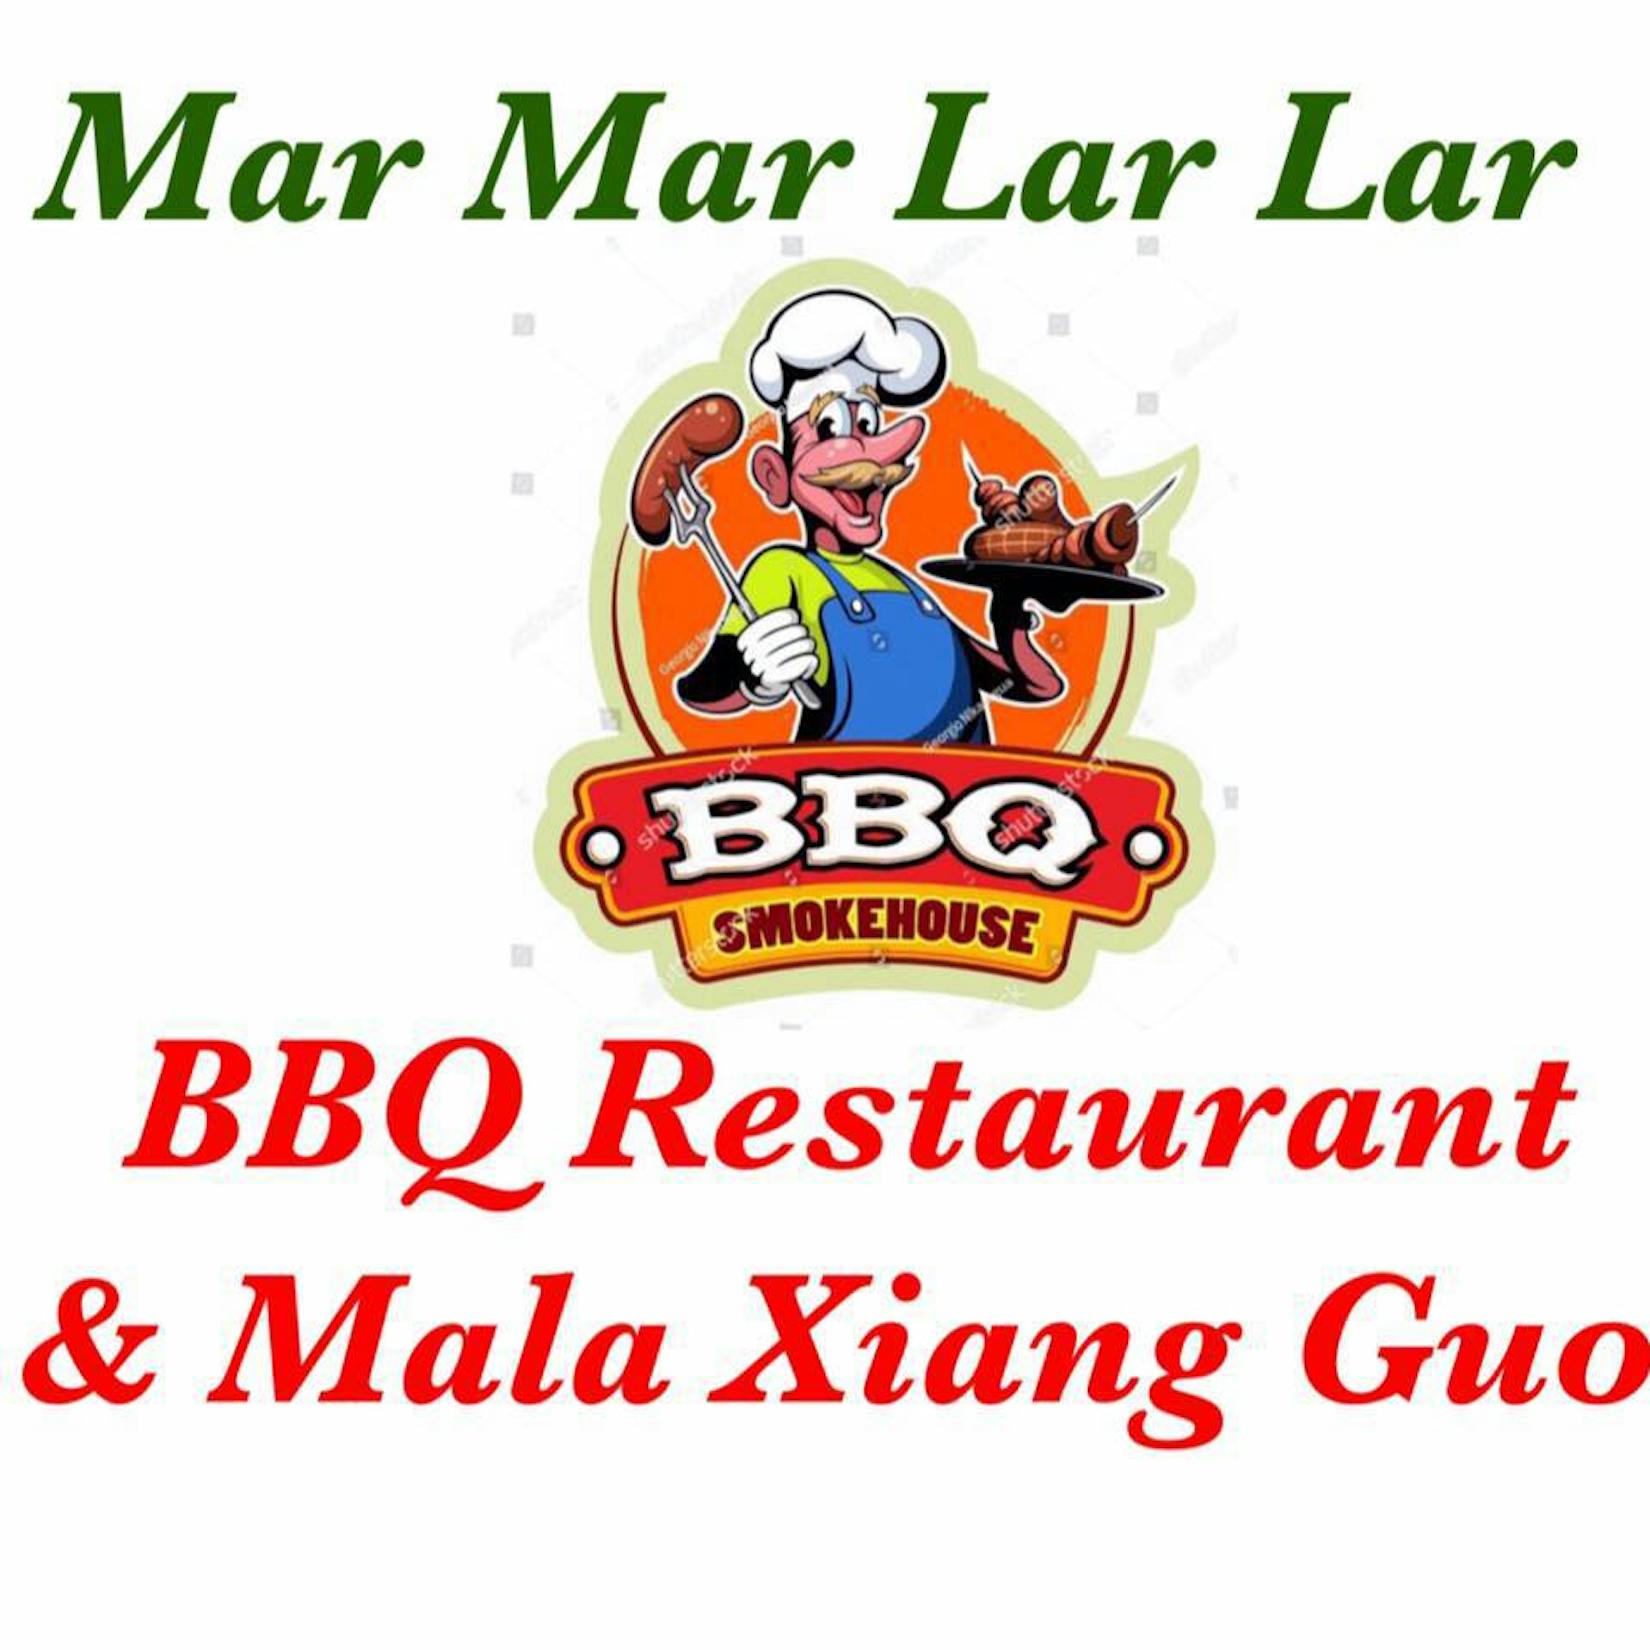 Mar Mar Lar Lar BBQ Restaurant & Mala Xiang Guo | yathar